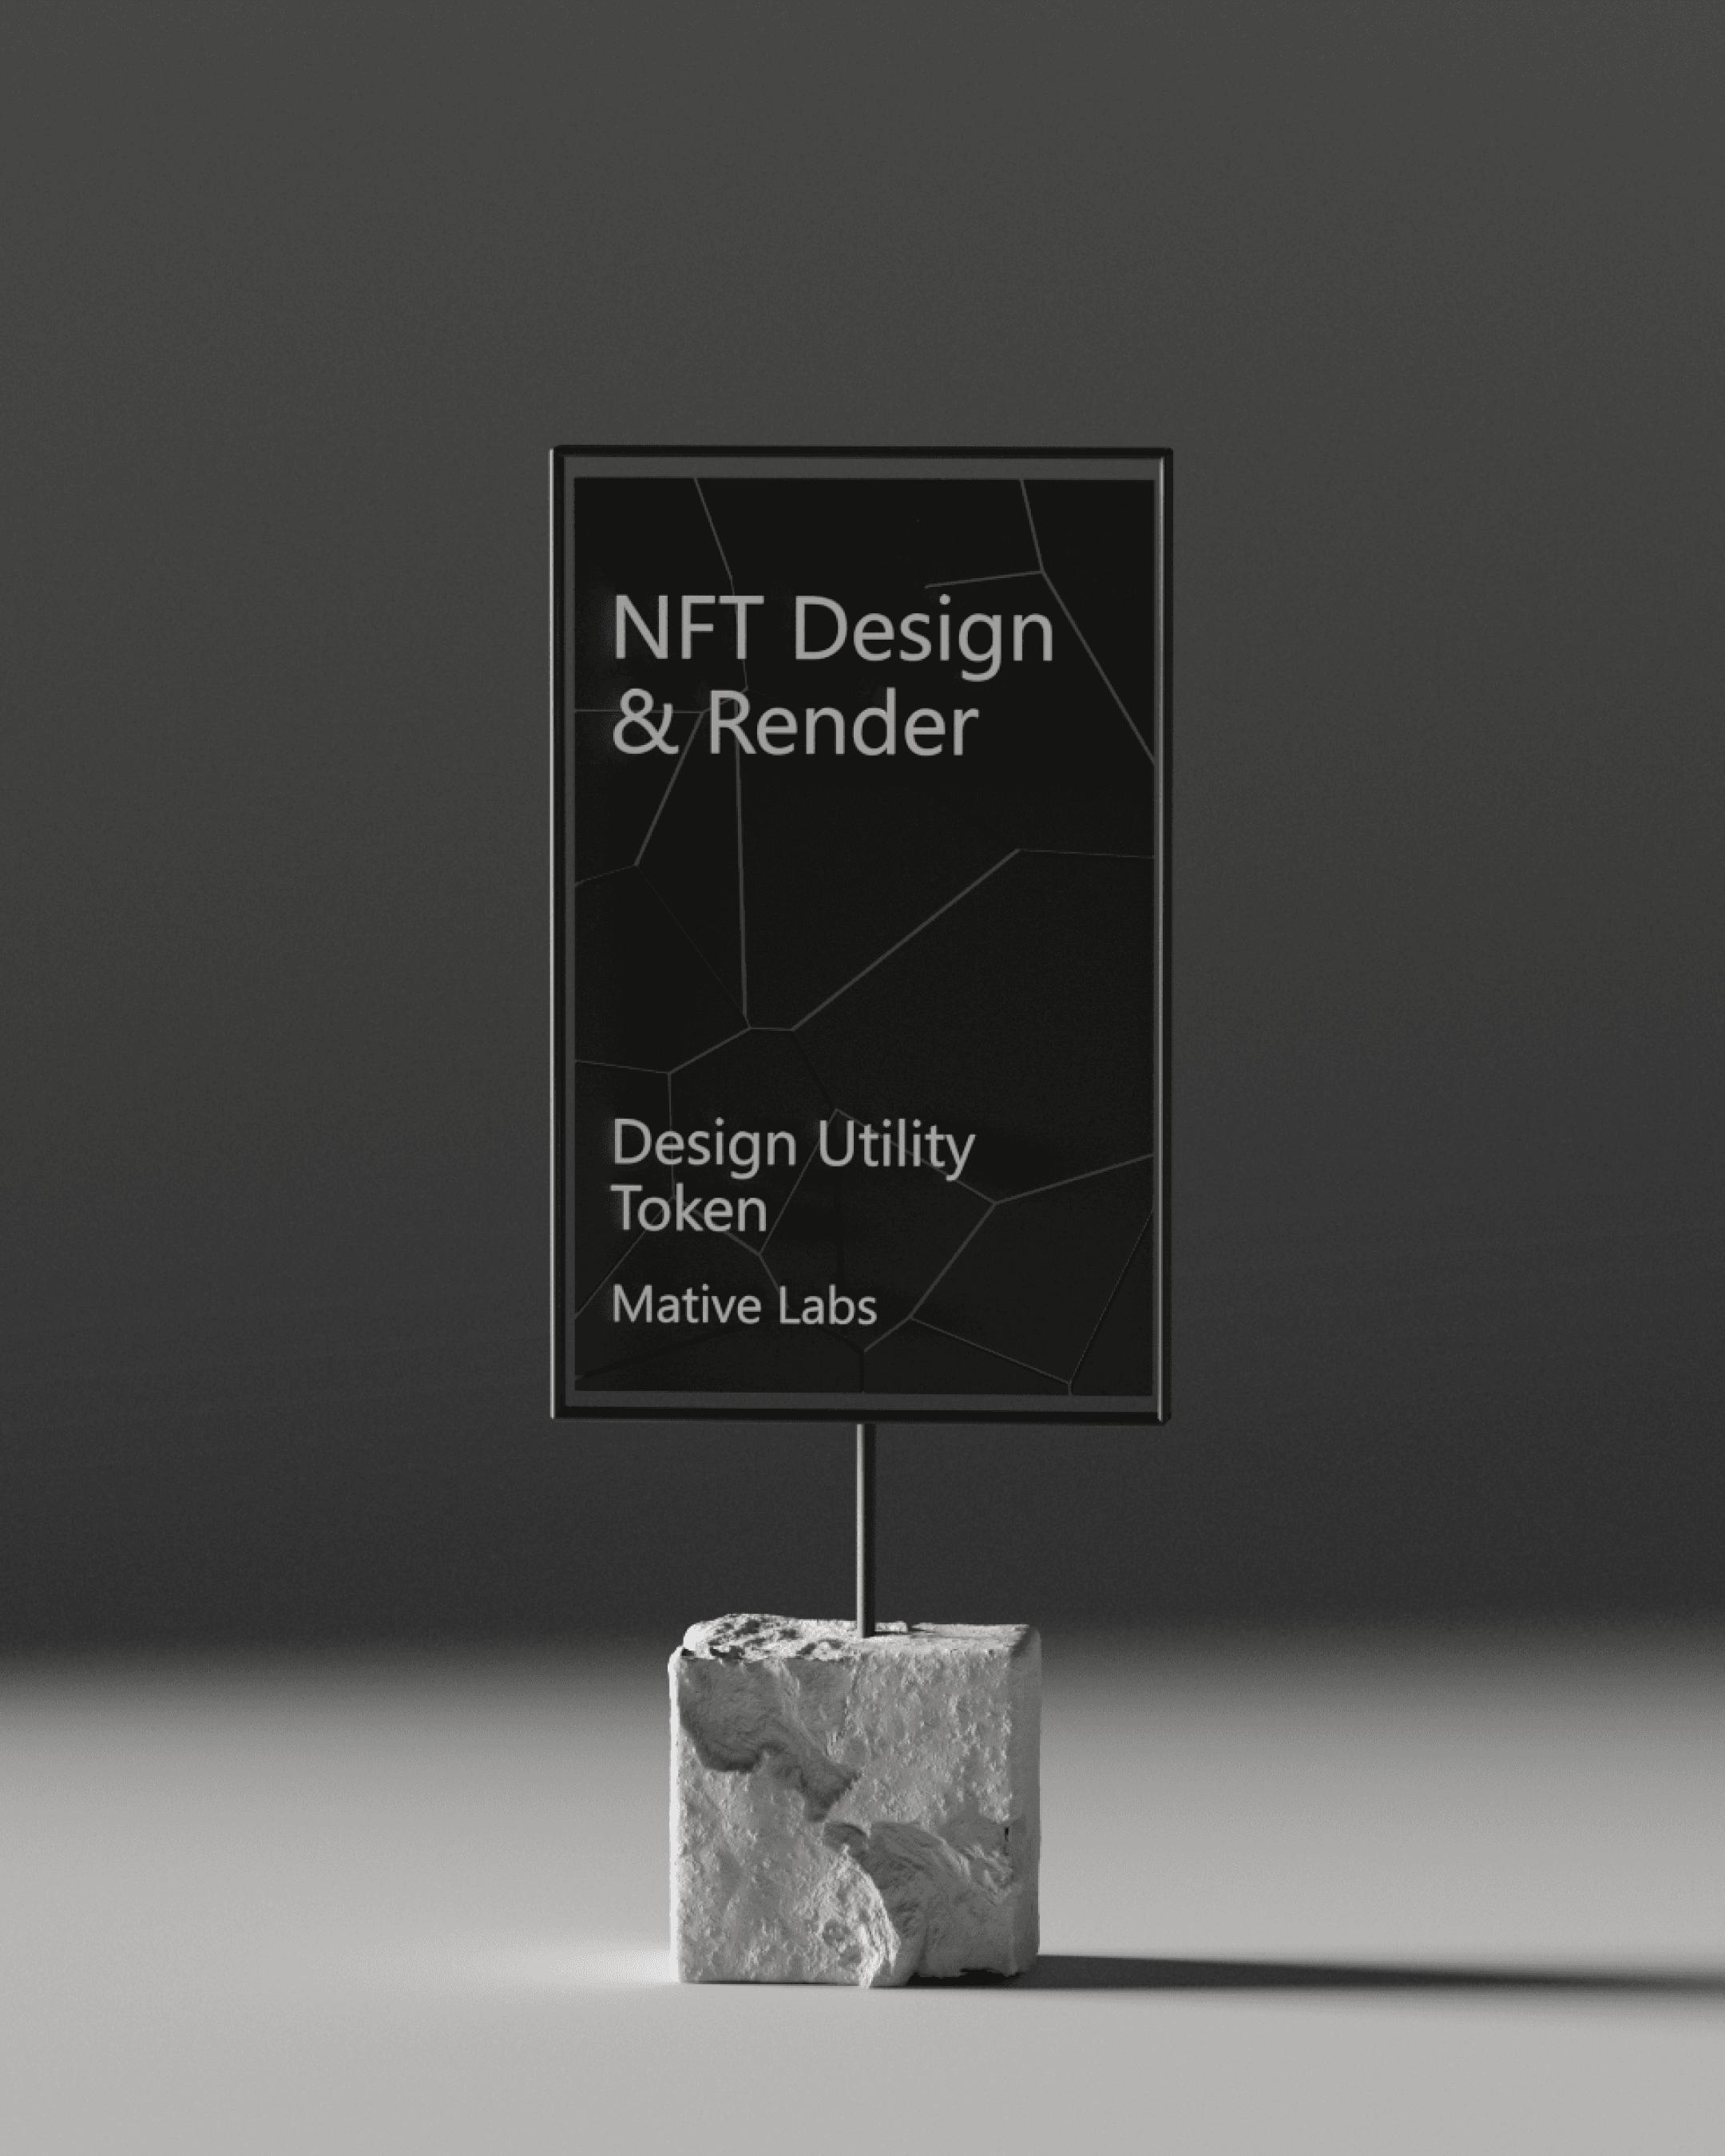 NFT Design & Render | Design Utility Token